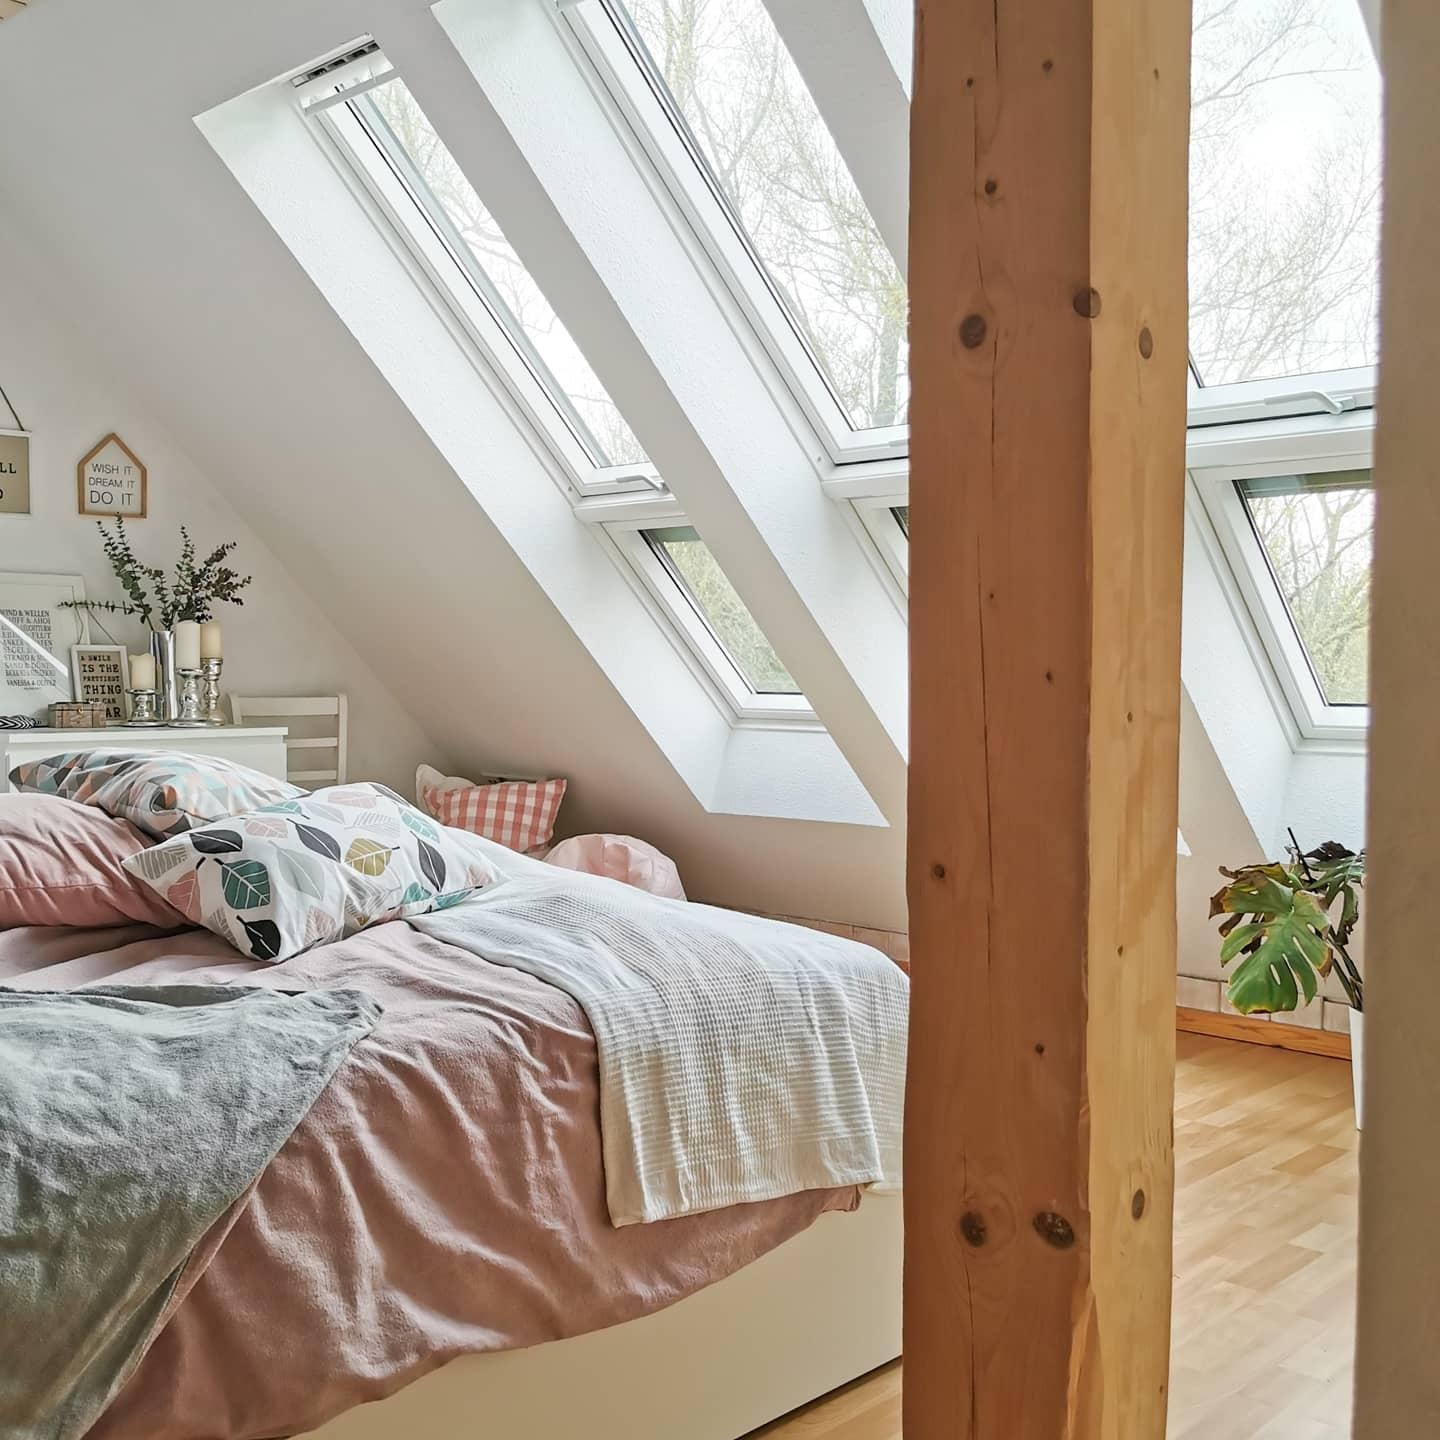 Schlafen wie unter freiem Himmel... #dachfenster #dachschrägen #schlafzimmer #bedroom #cozy #hygge #pastell #licht